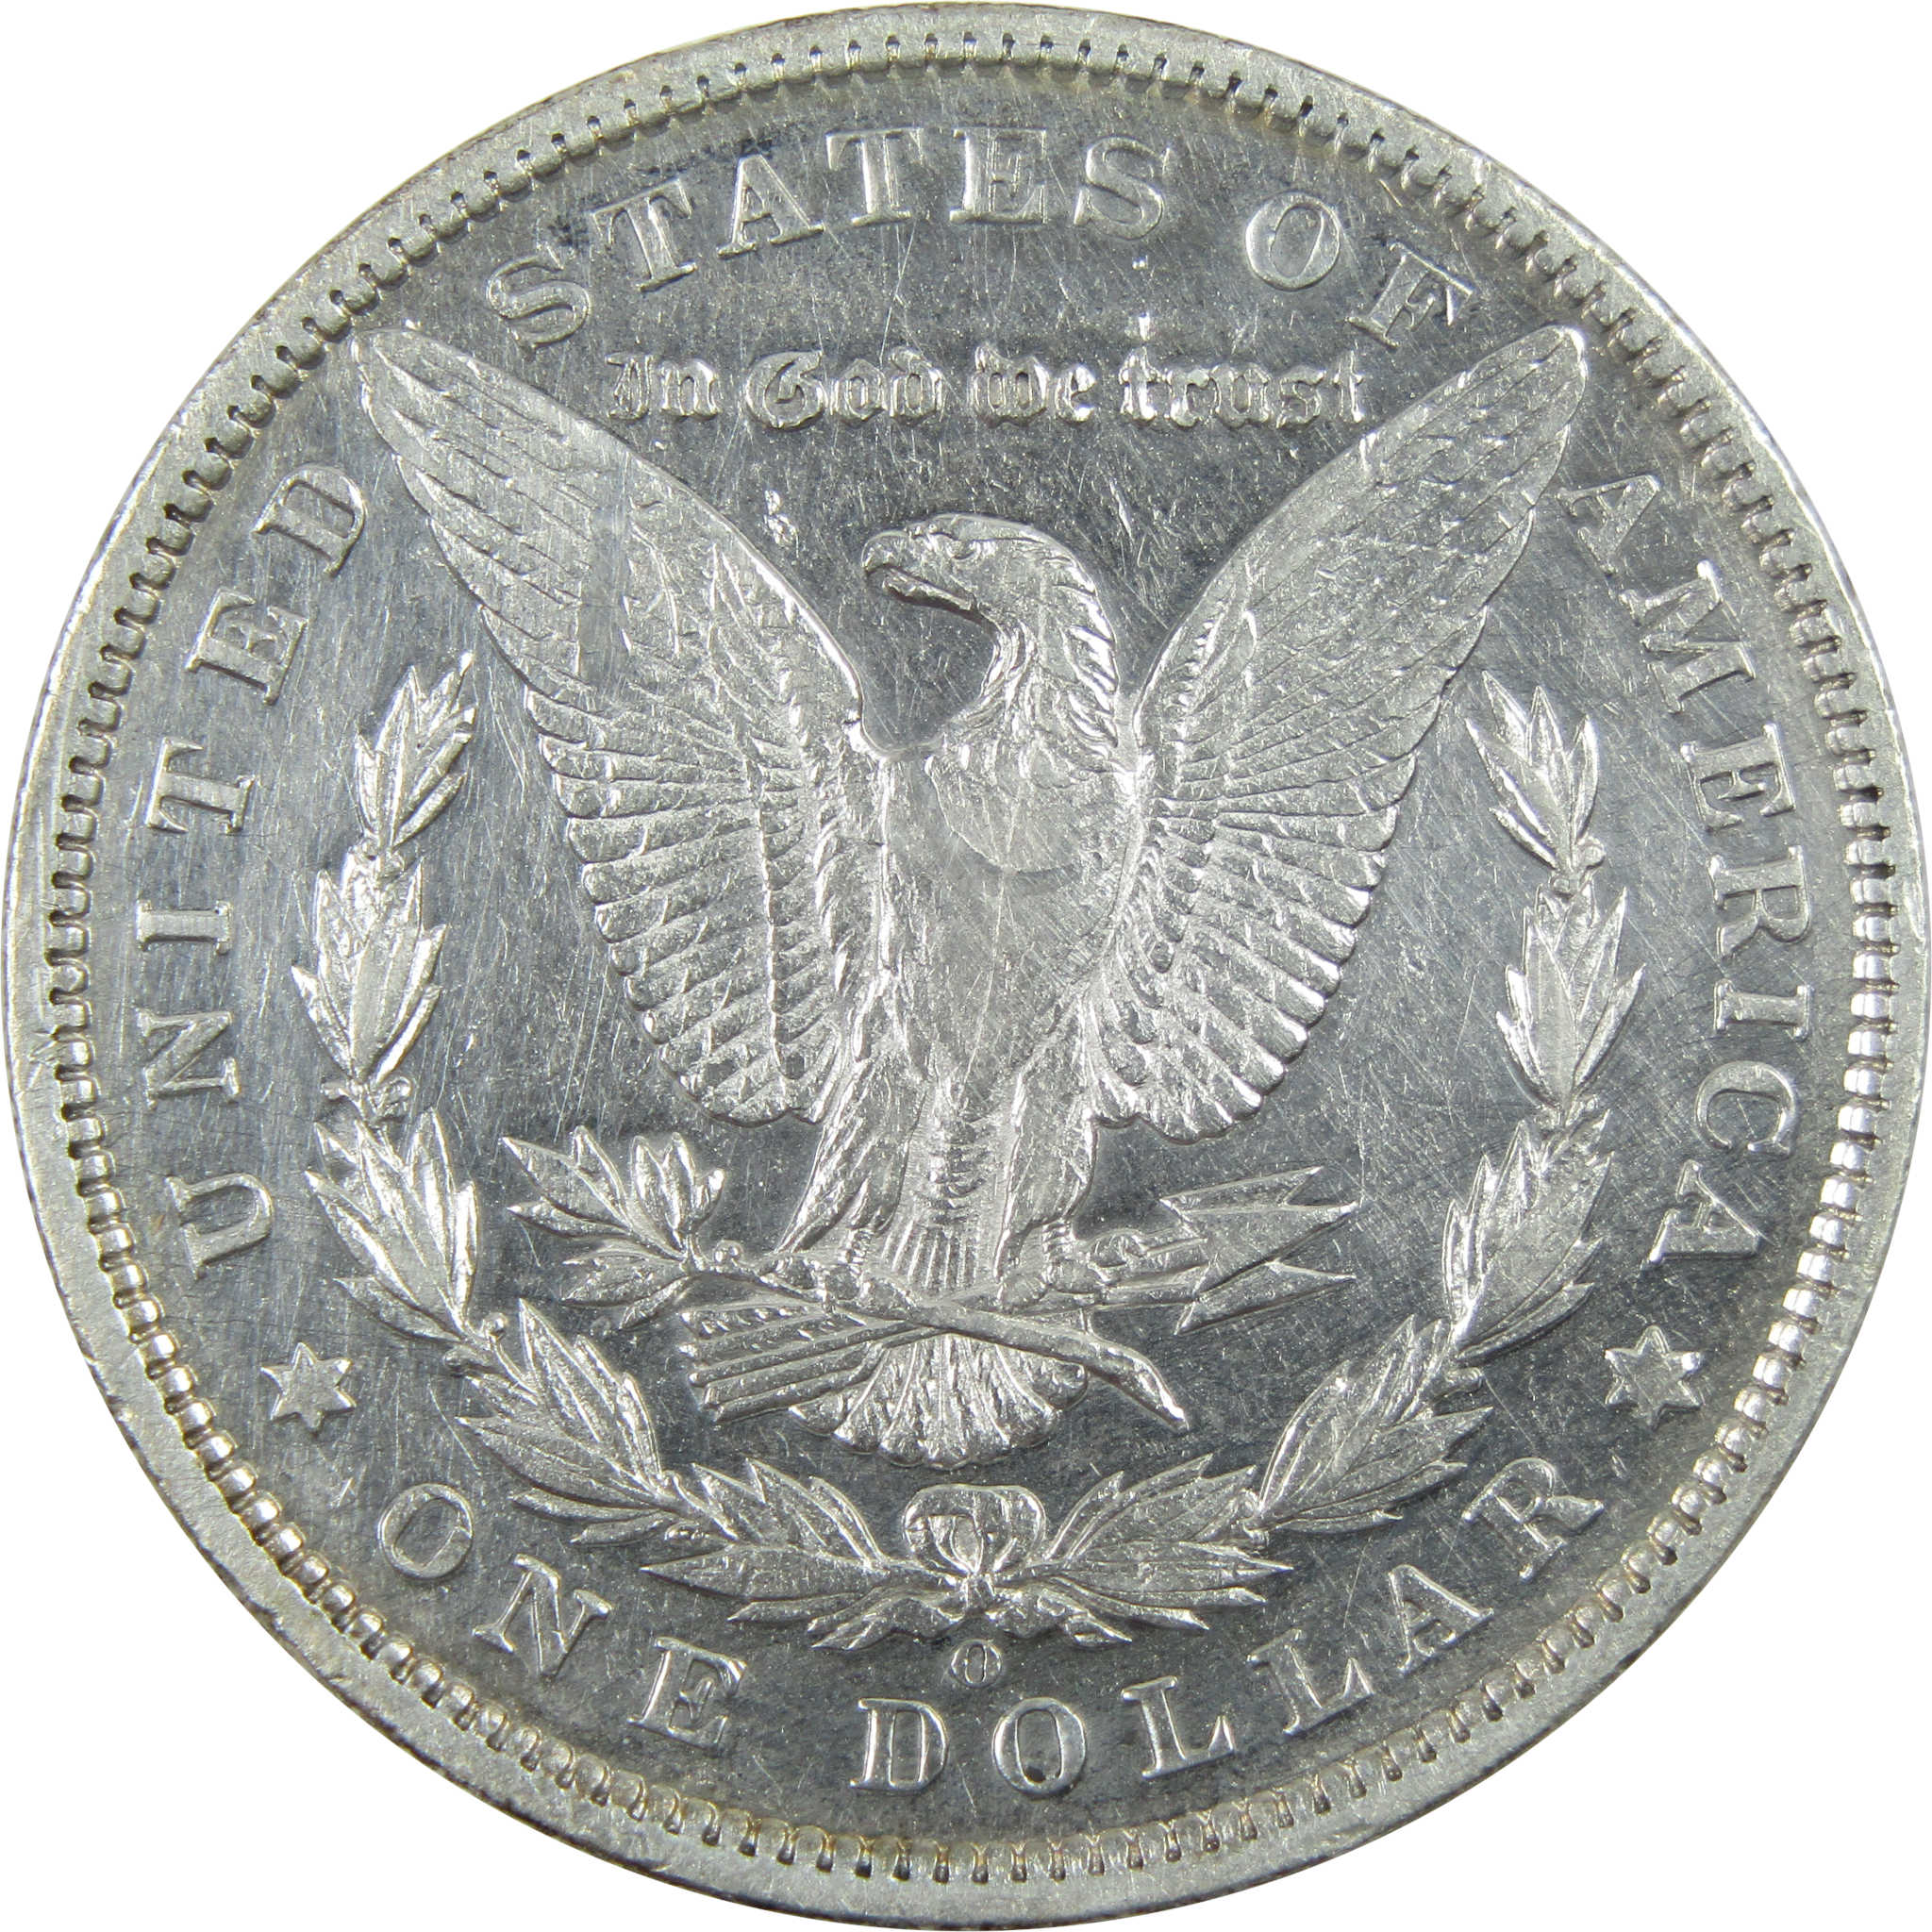 1894 O Morgan Dollar XF EF Extremely Fine Details Silver $1 SKU:I11701 - Morgan coin - Morgan silver dollar - Morgan silver dollar for sale - Profile Coins &amp; Collectibles